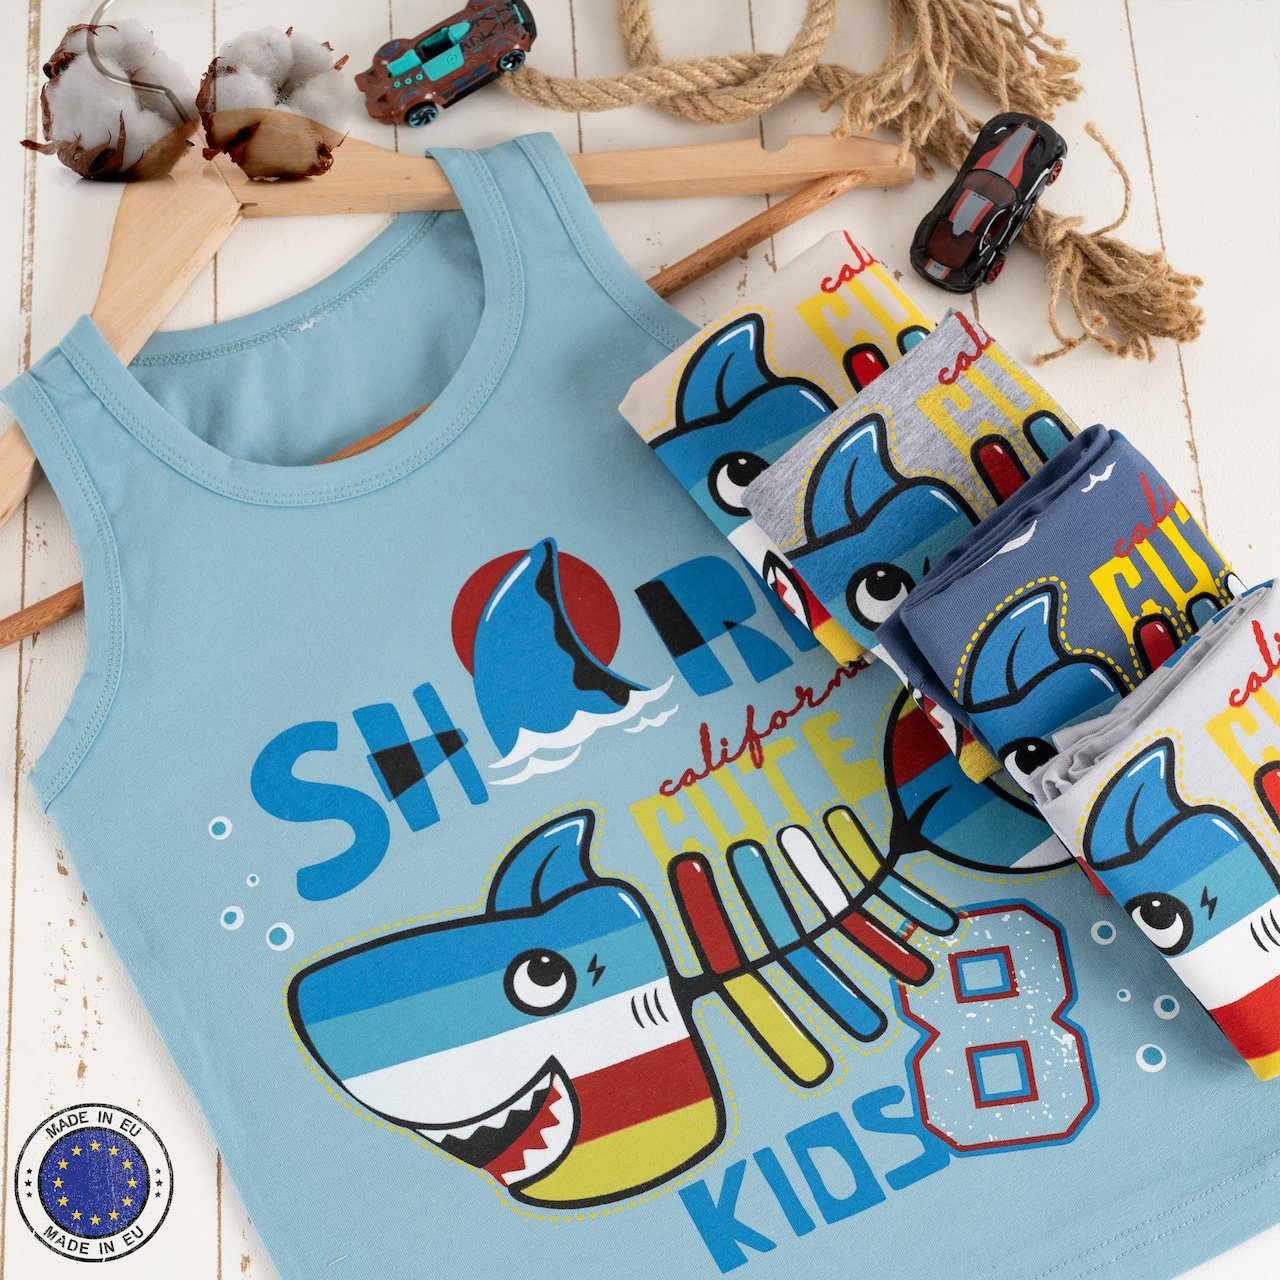 LOREZA Unterhemd 5 SHARK Unterhemden - 5-St) (Spar-Packung, Jungen Unterwäsche Tank Baumwolle